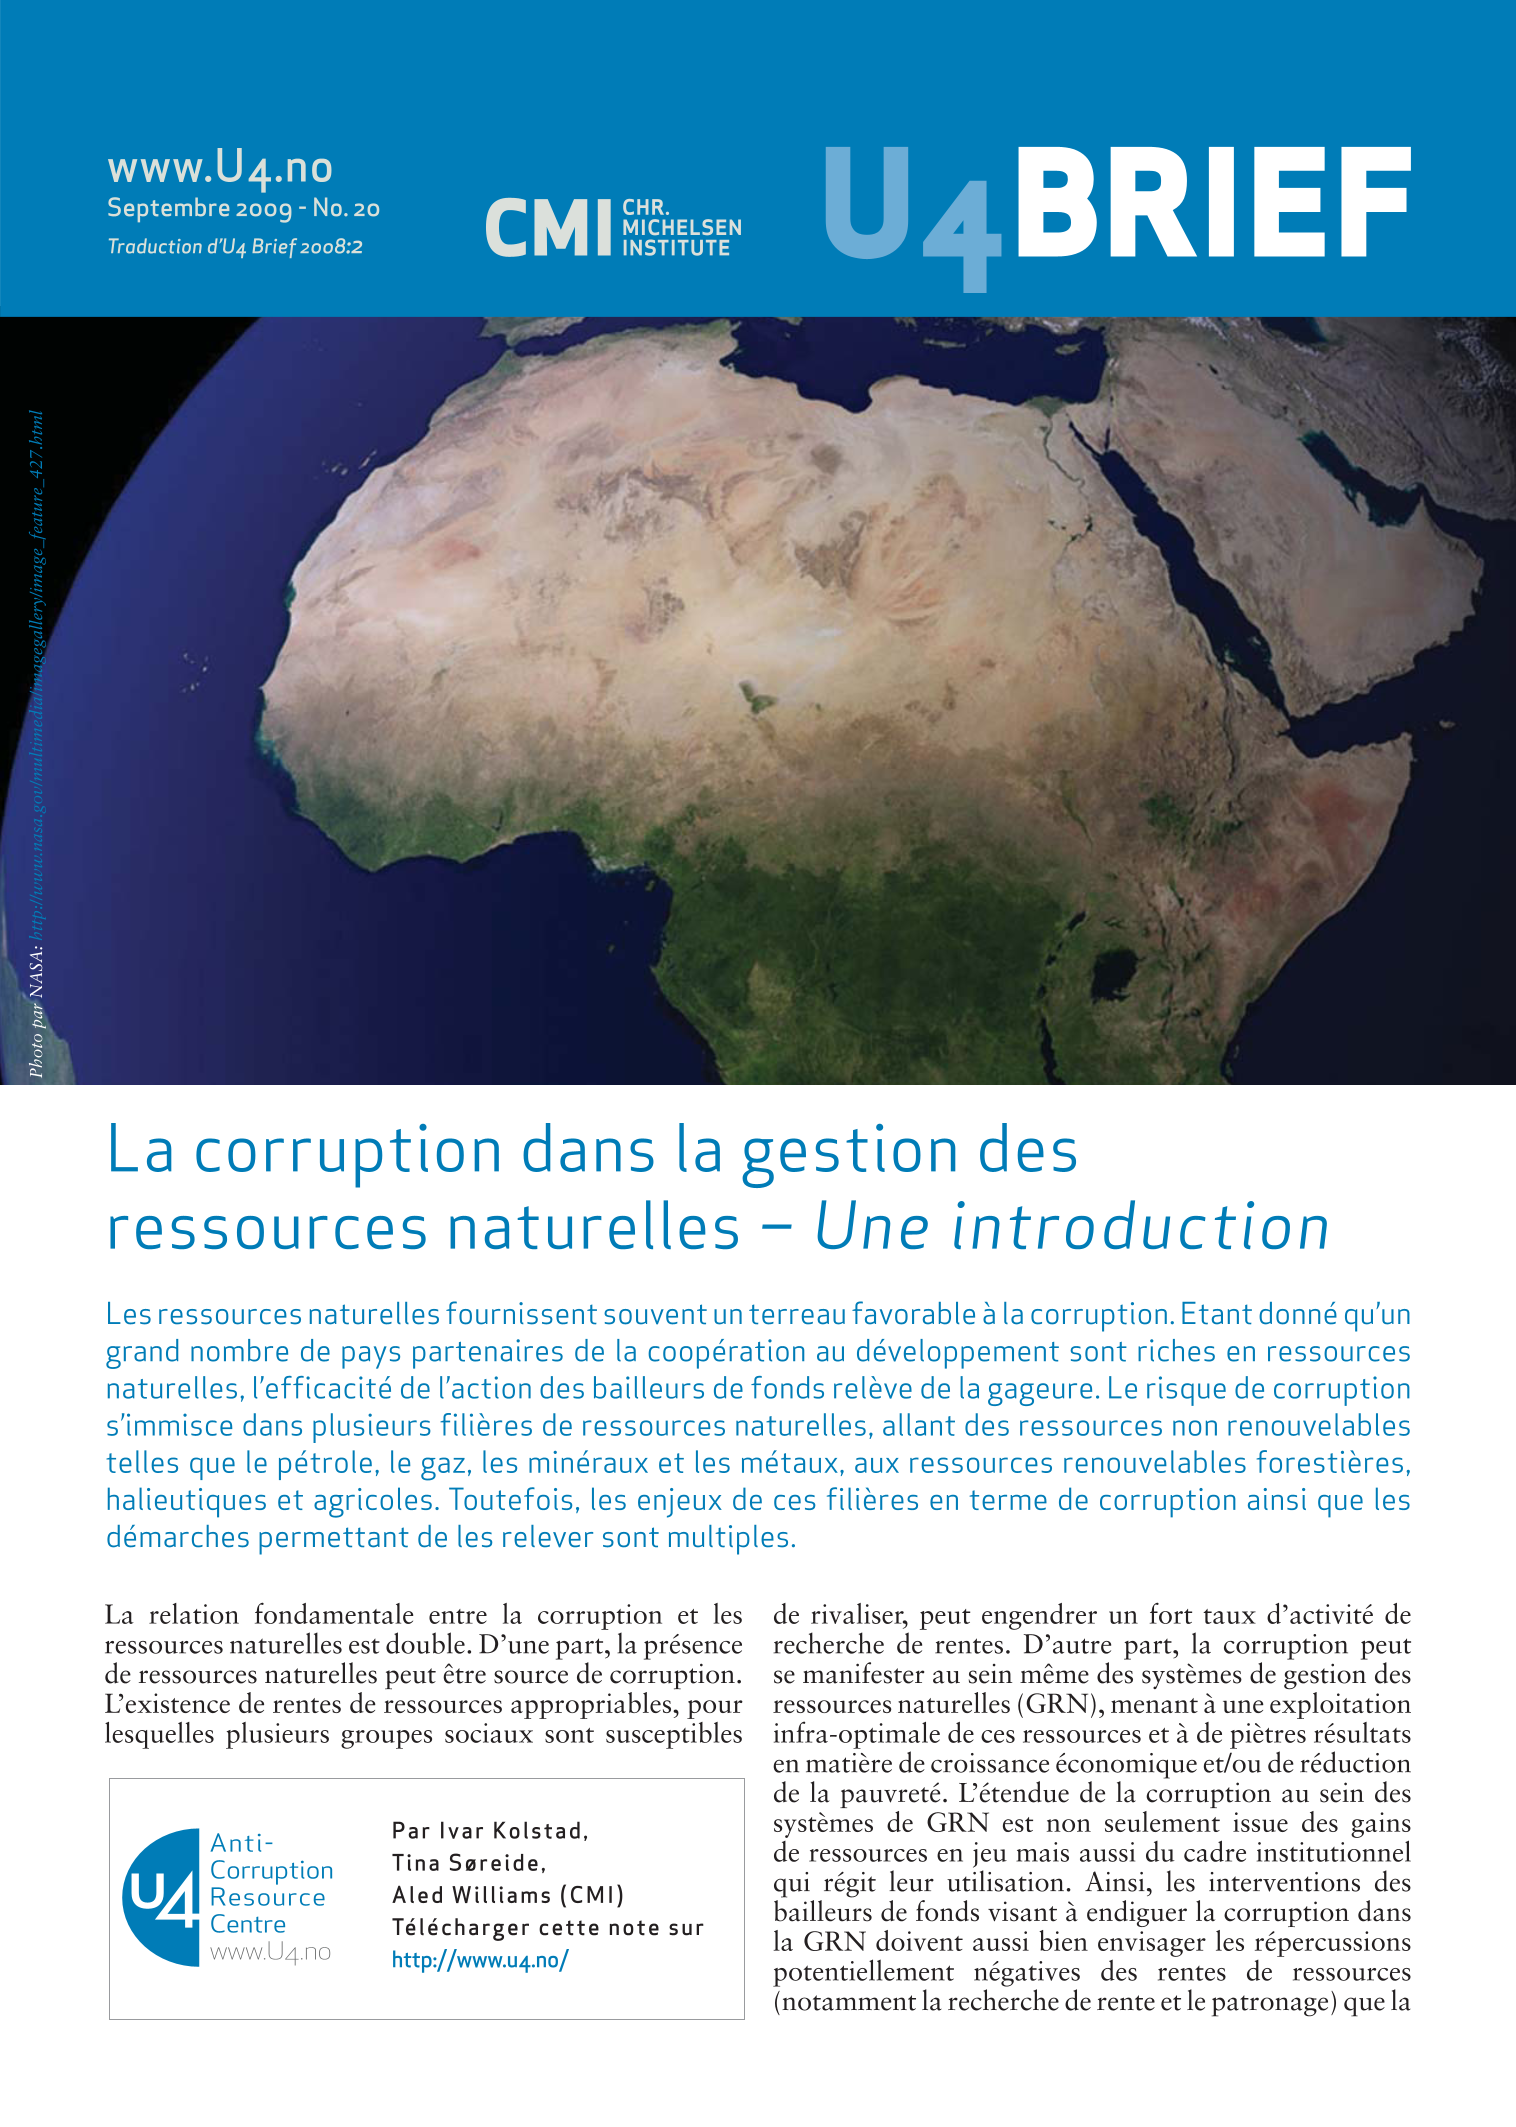 La corruption dans la gestion des ressources naturelles - Une introduction